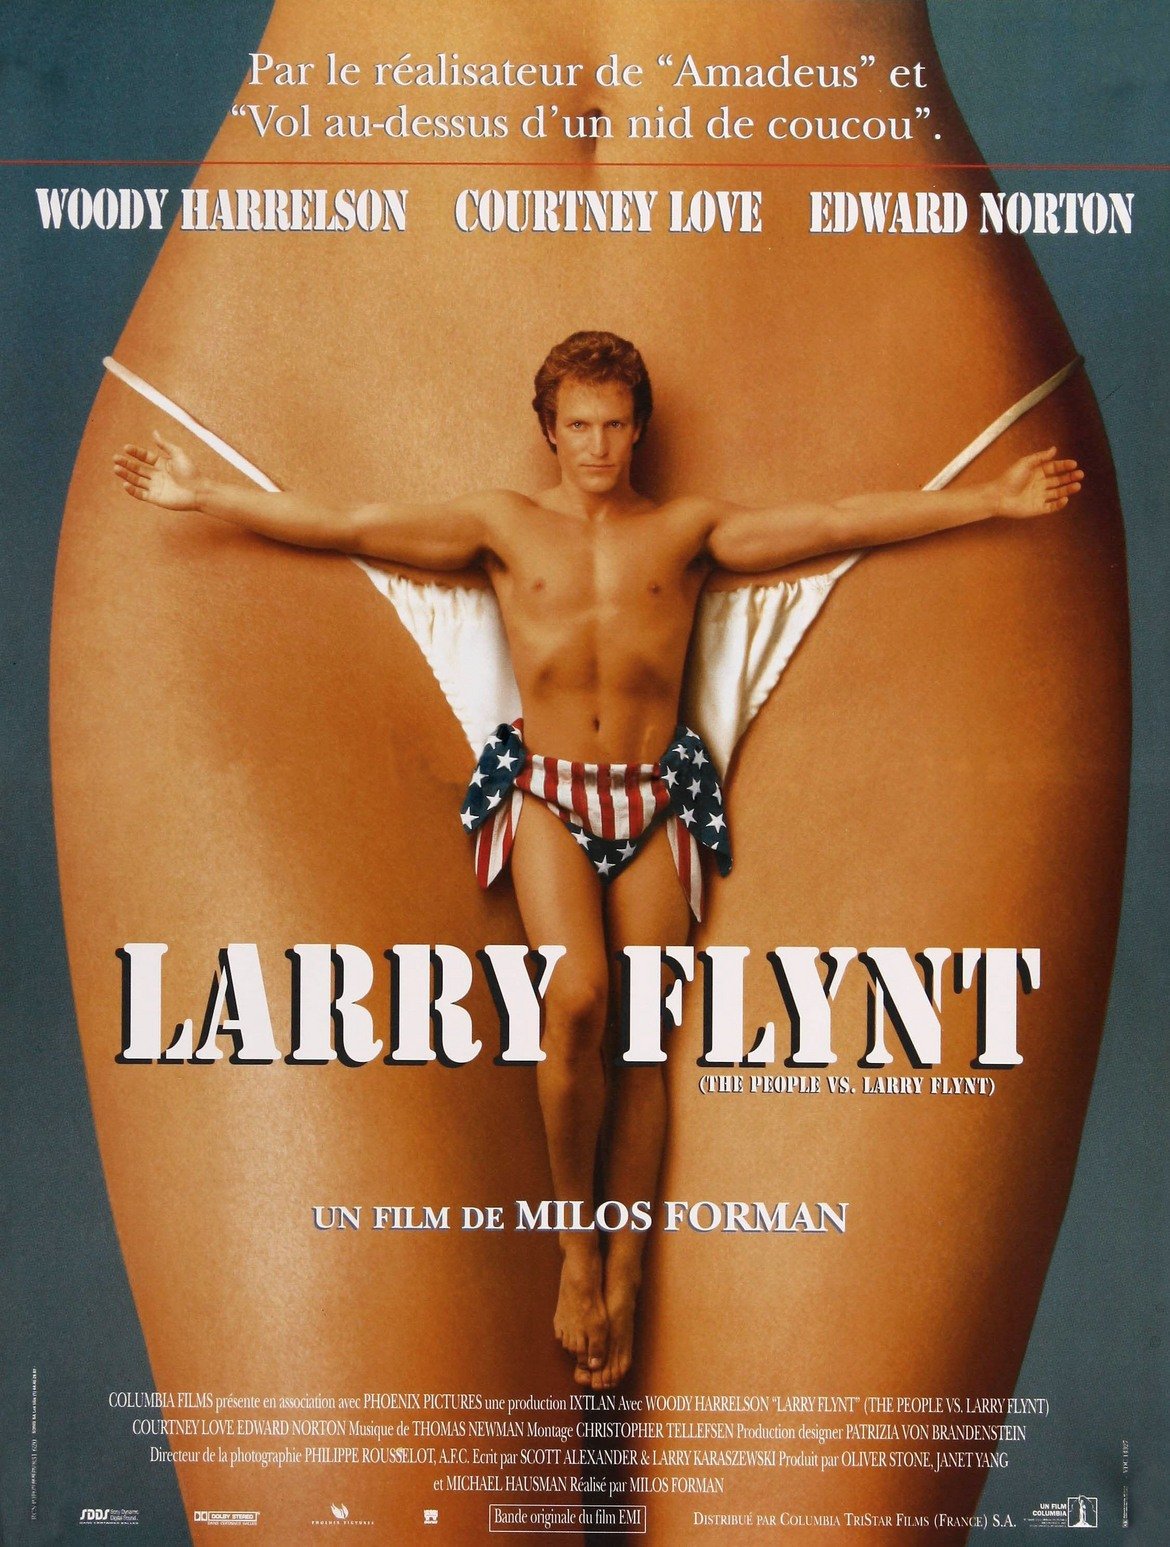 The People Vs Larry Flynt / "Народът срещу Лари Флин" 
Уди Харелсън, разперил ръце като Христос, с препаска от американското знаме и на фона на женски гениталии - какъв по-добър постер за филм, описващ живота на един от кралете на порното през миналия век в САЩ. Лентата за една от най-скандалните личности за времето си - собственикът на Hustler Лари Флинт - определено си изисква и достатъчно скандален постер. Въпросът е, че този настъпва твърде много хора по пръстите на краката, така че съвсем логично е и забранен в САЩ.